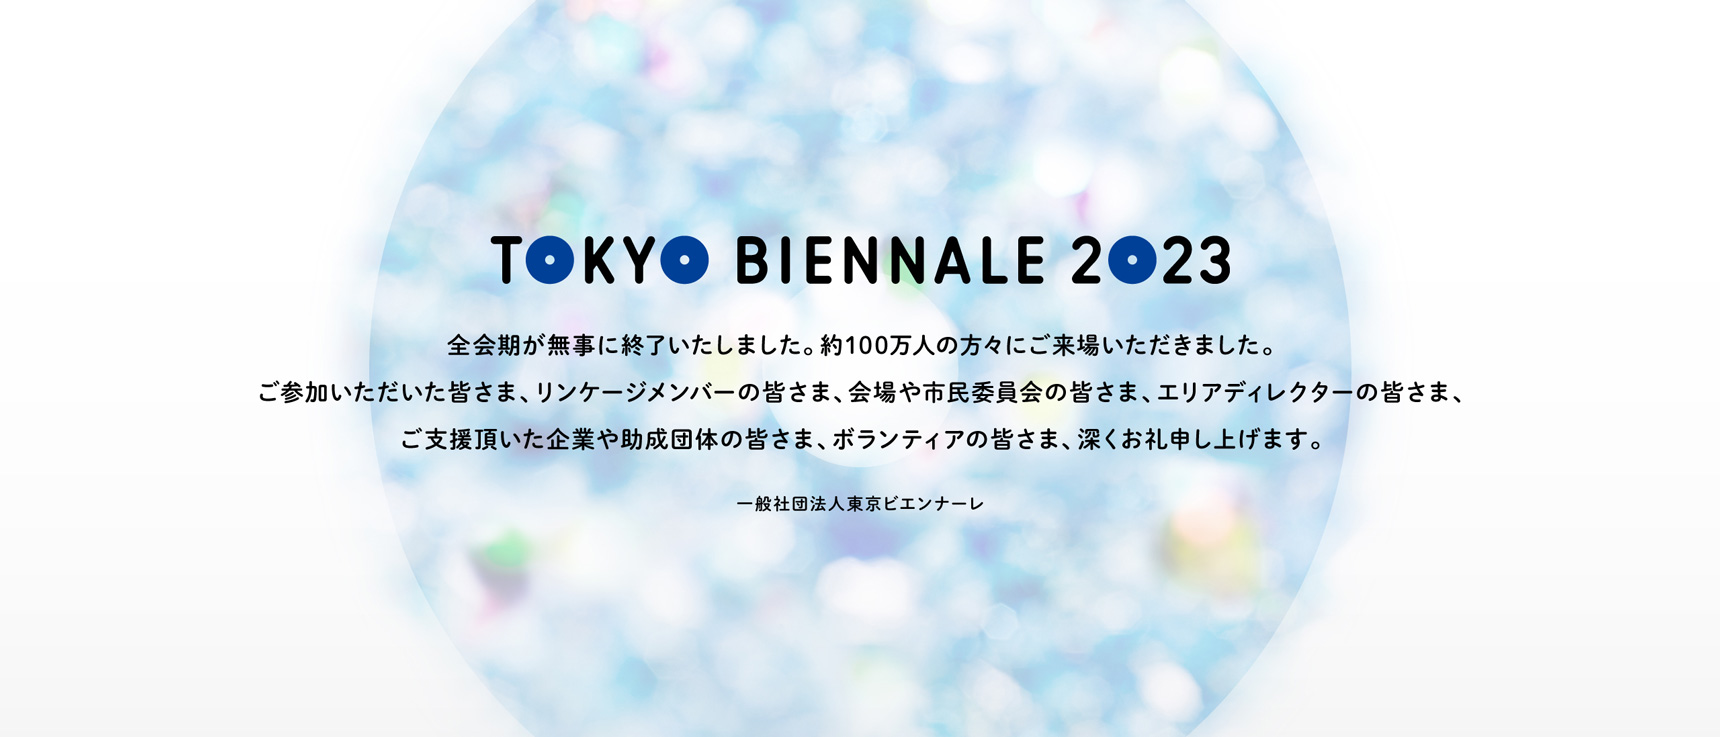 TOKYO BIENNALE 2023